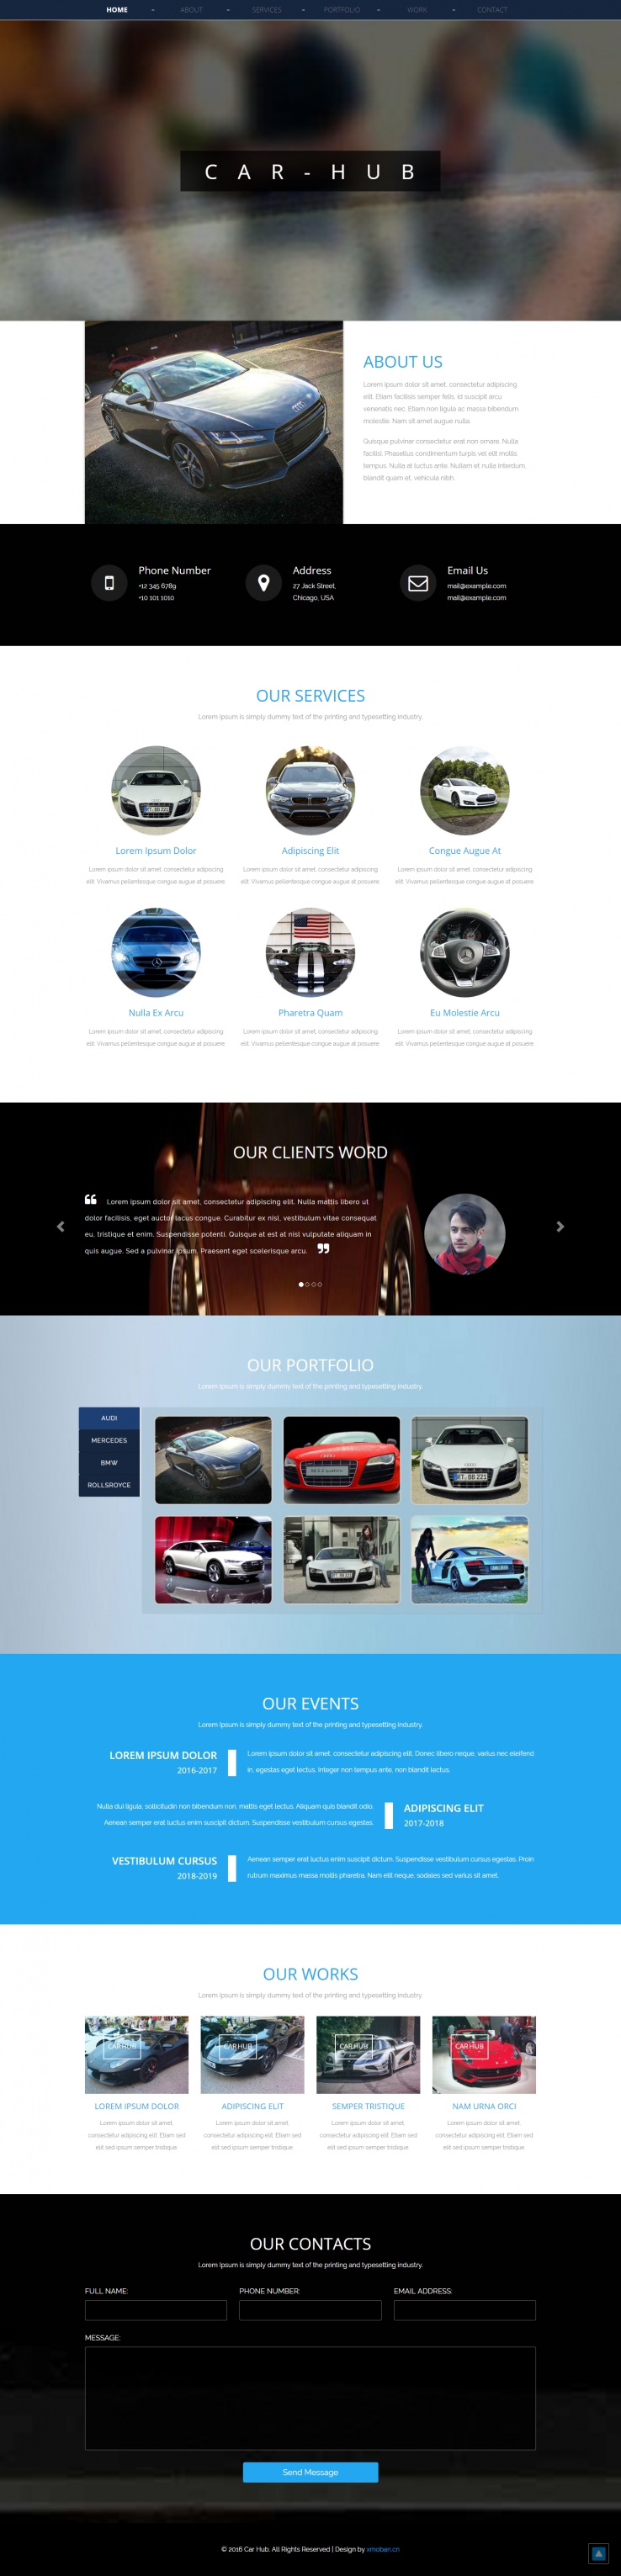 蓝色欧美风格的汽车销售企业网站源码下载